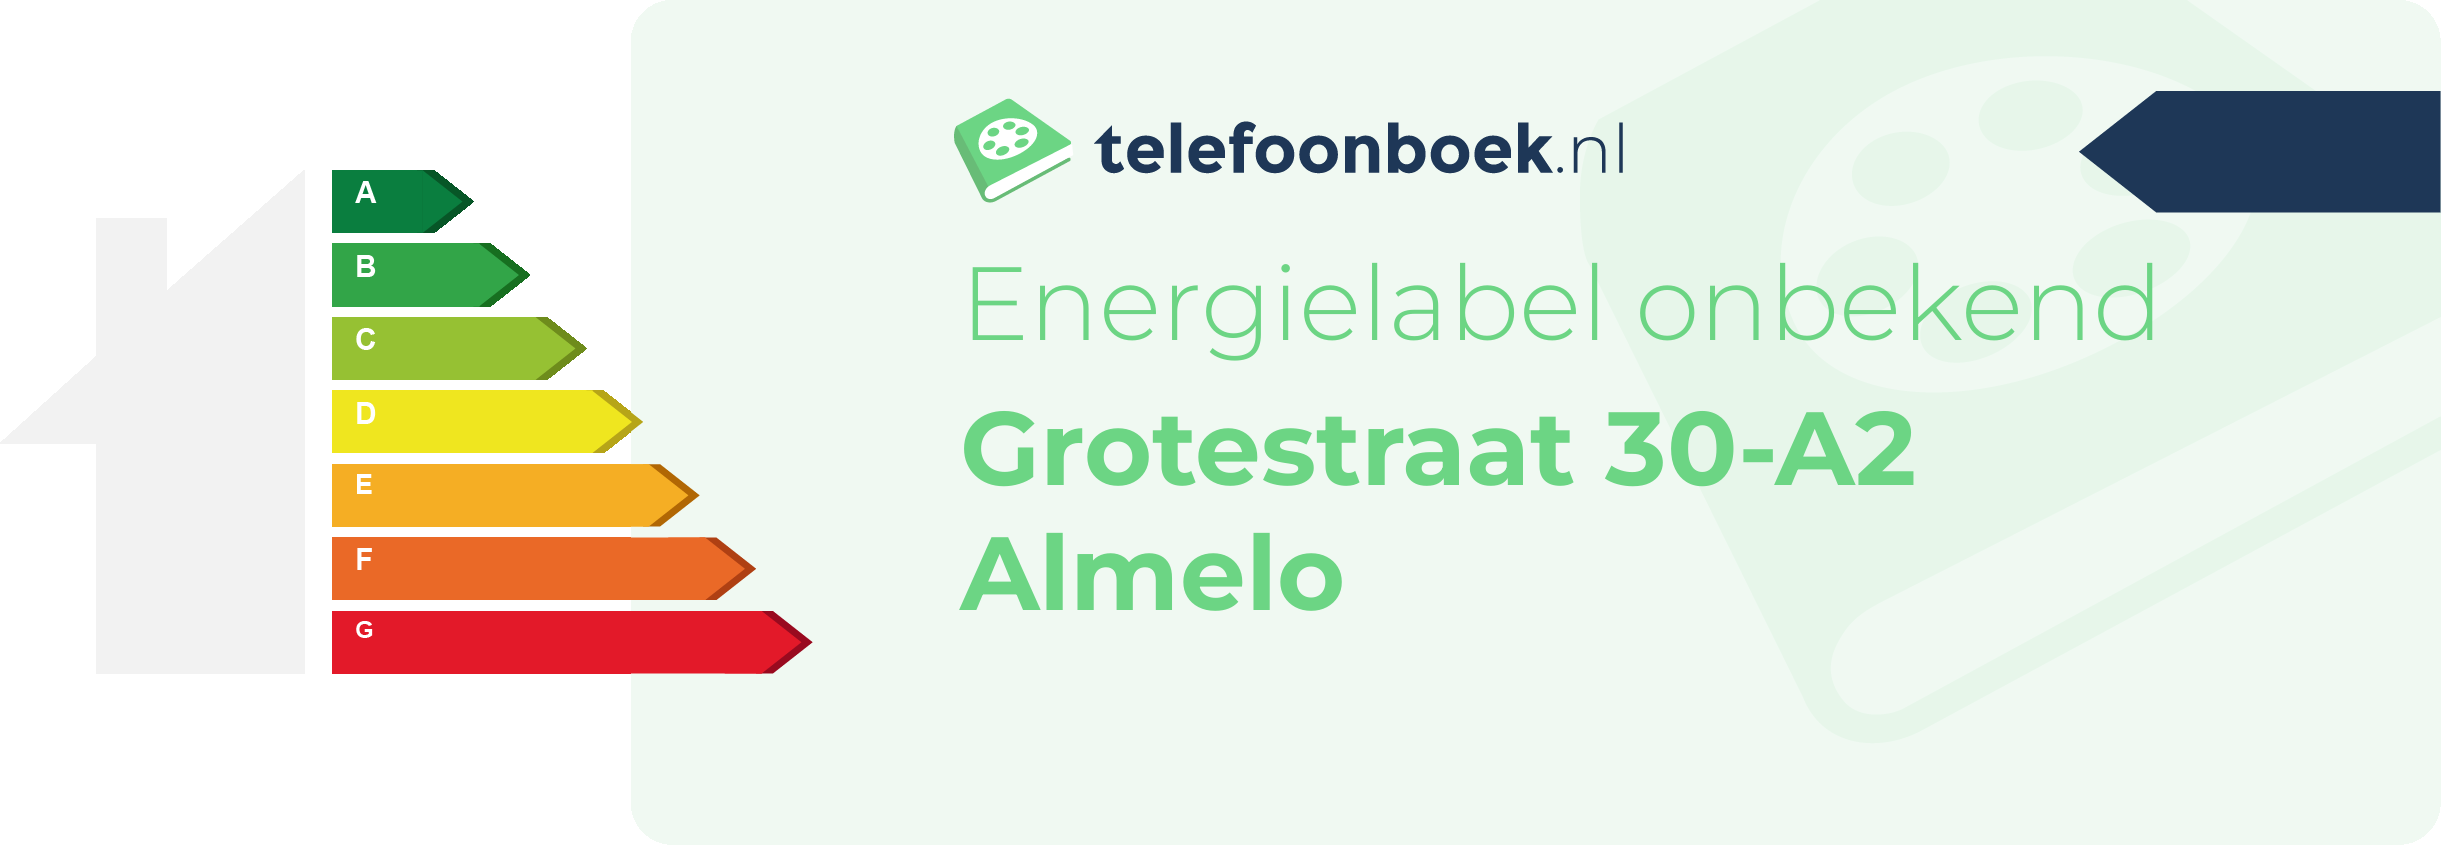 Energielabel Grotestraat 30-A2 Almelo